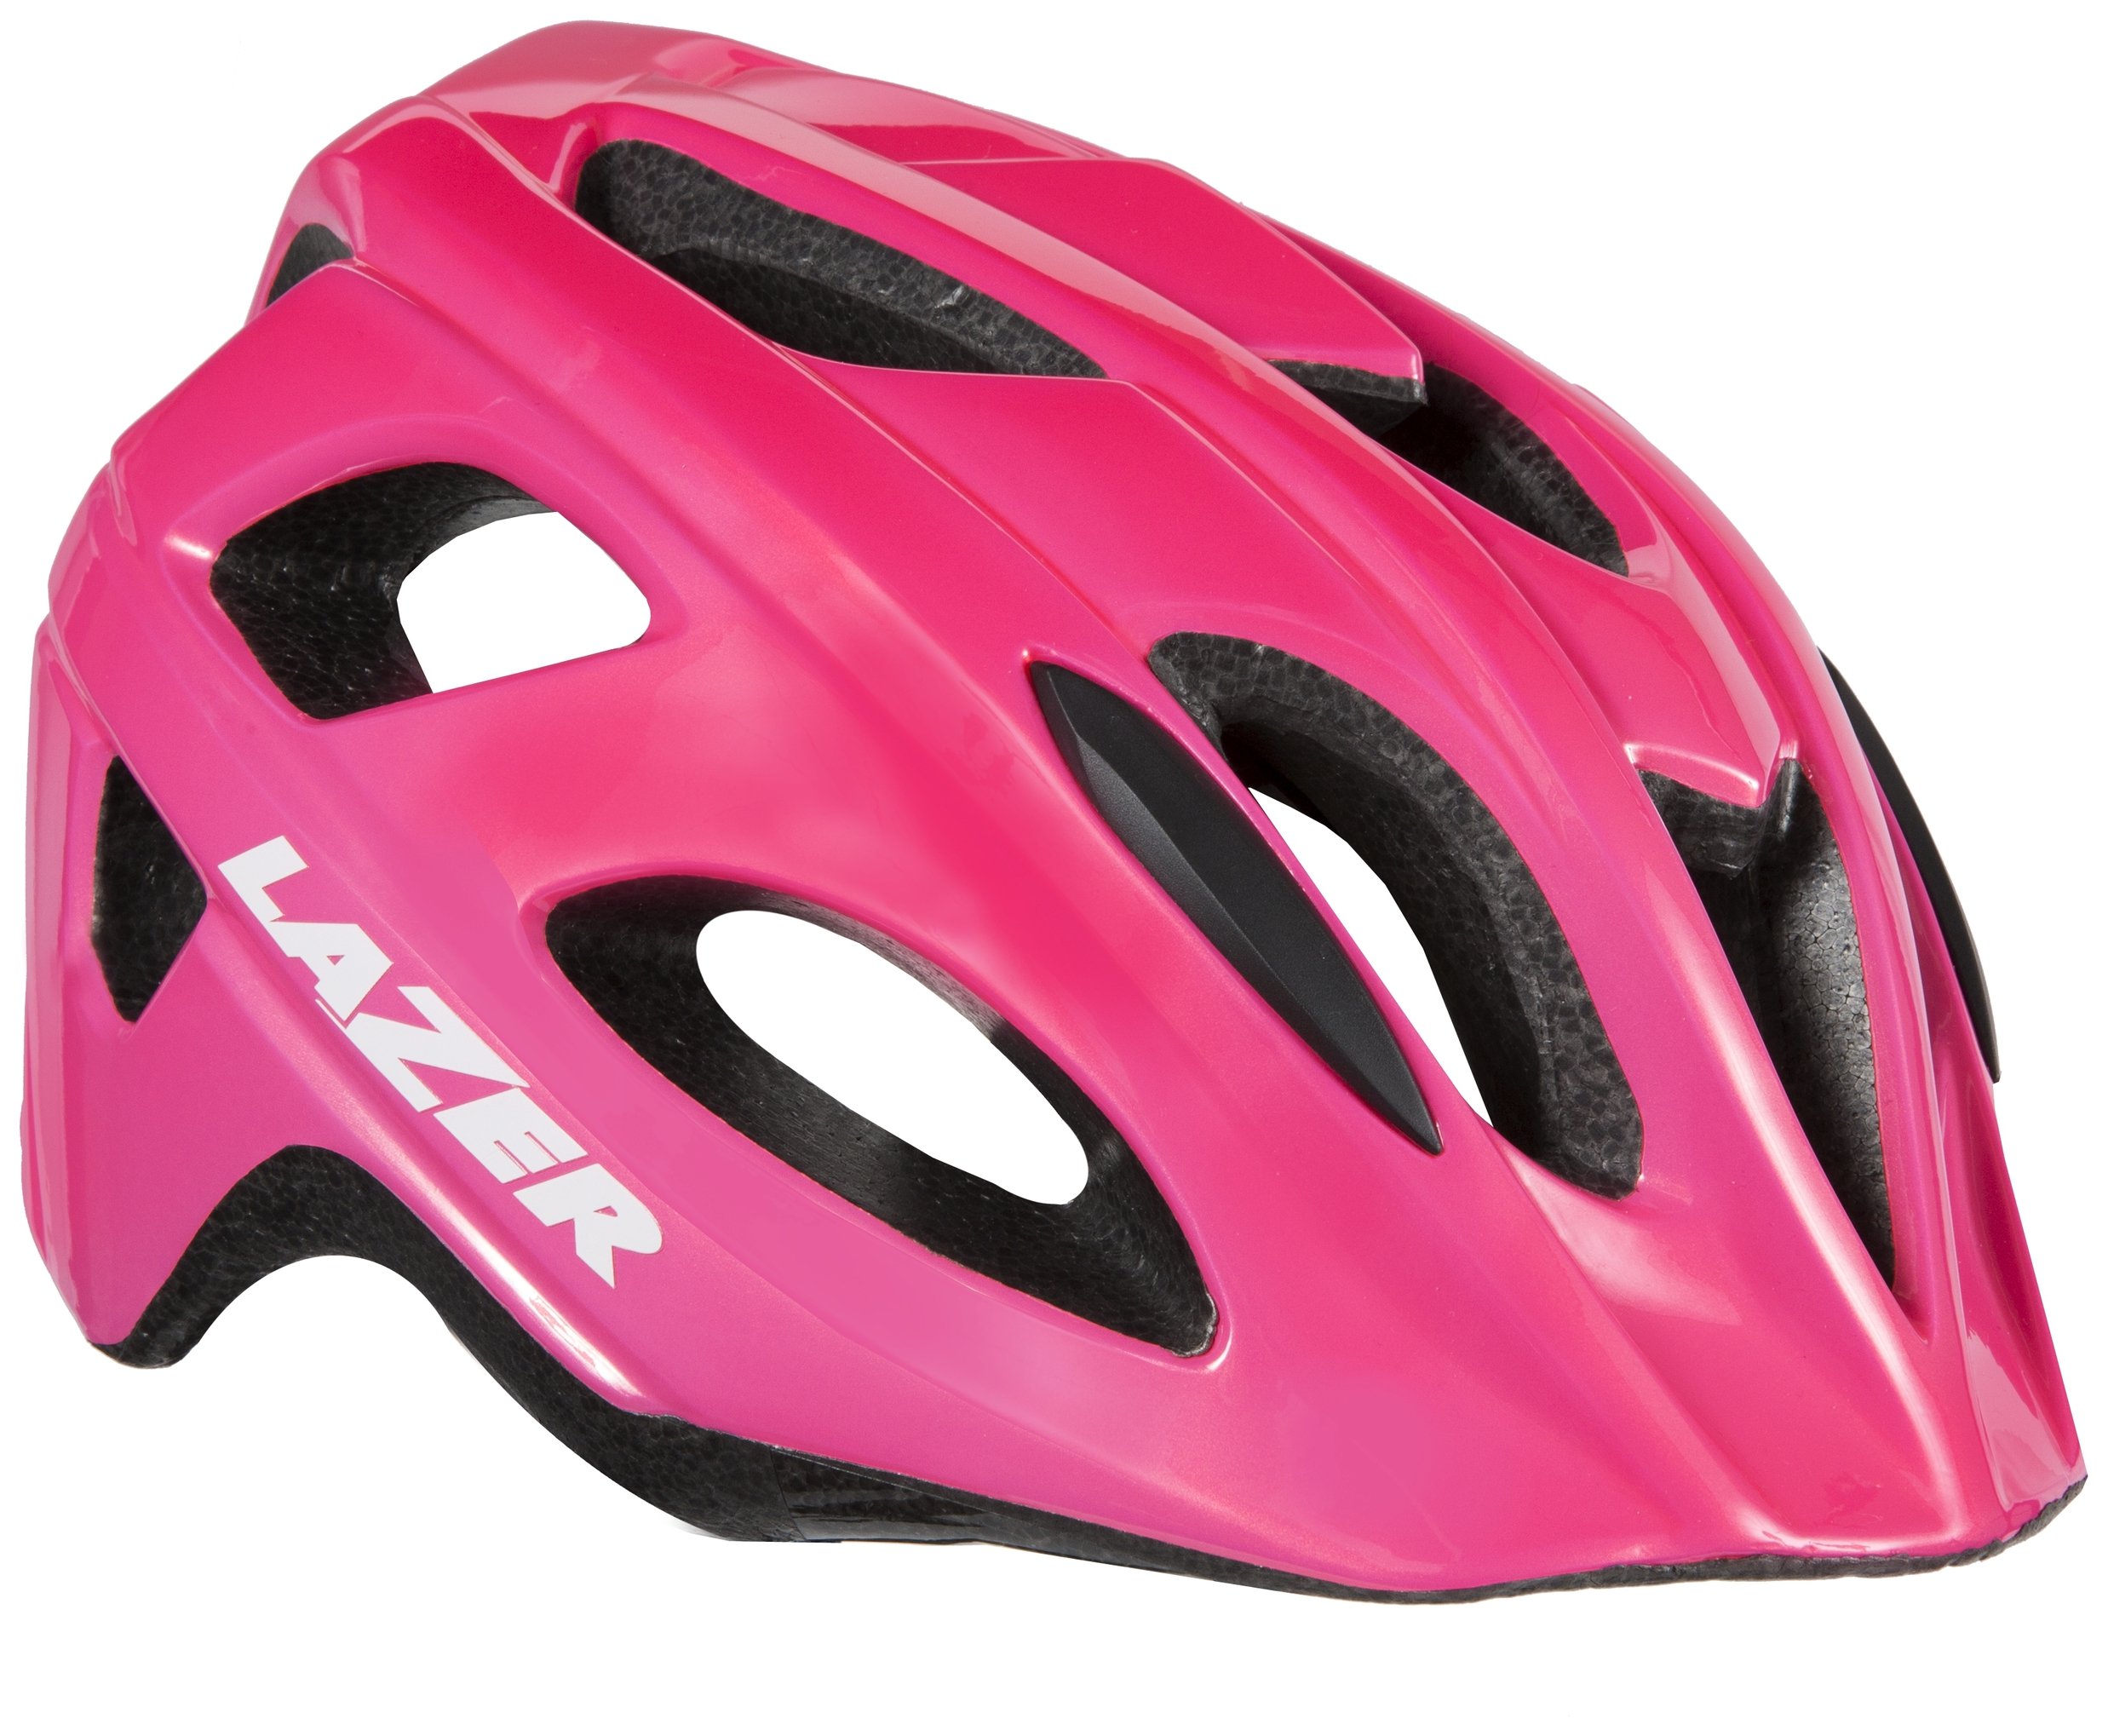 Lazer Nutz Bike Youth Helmet review